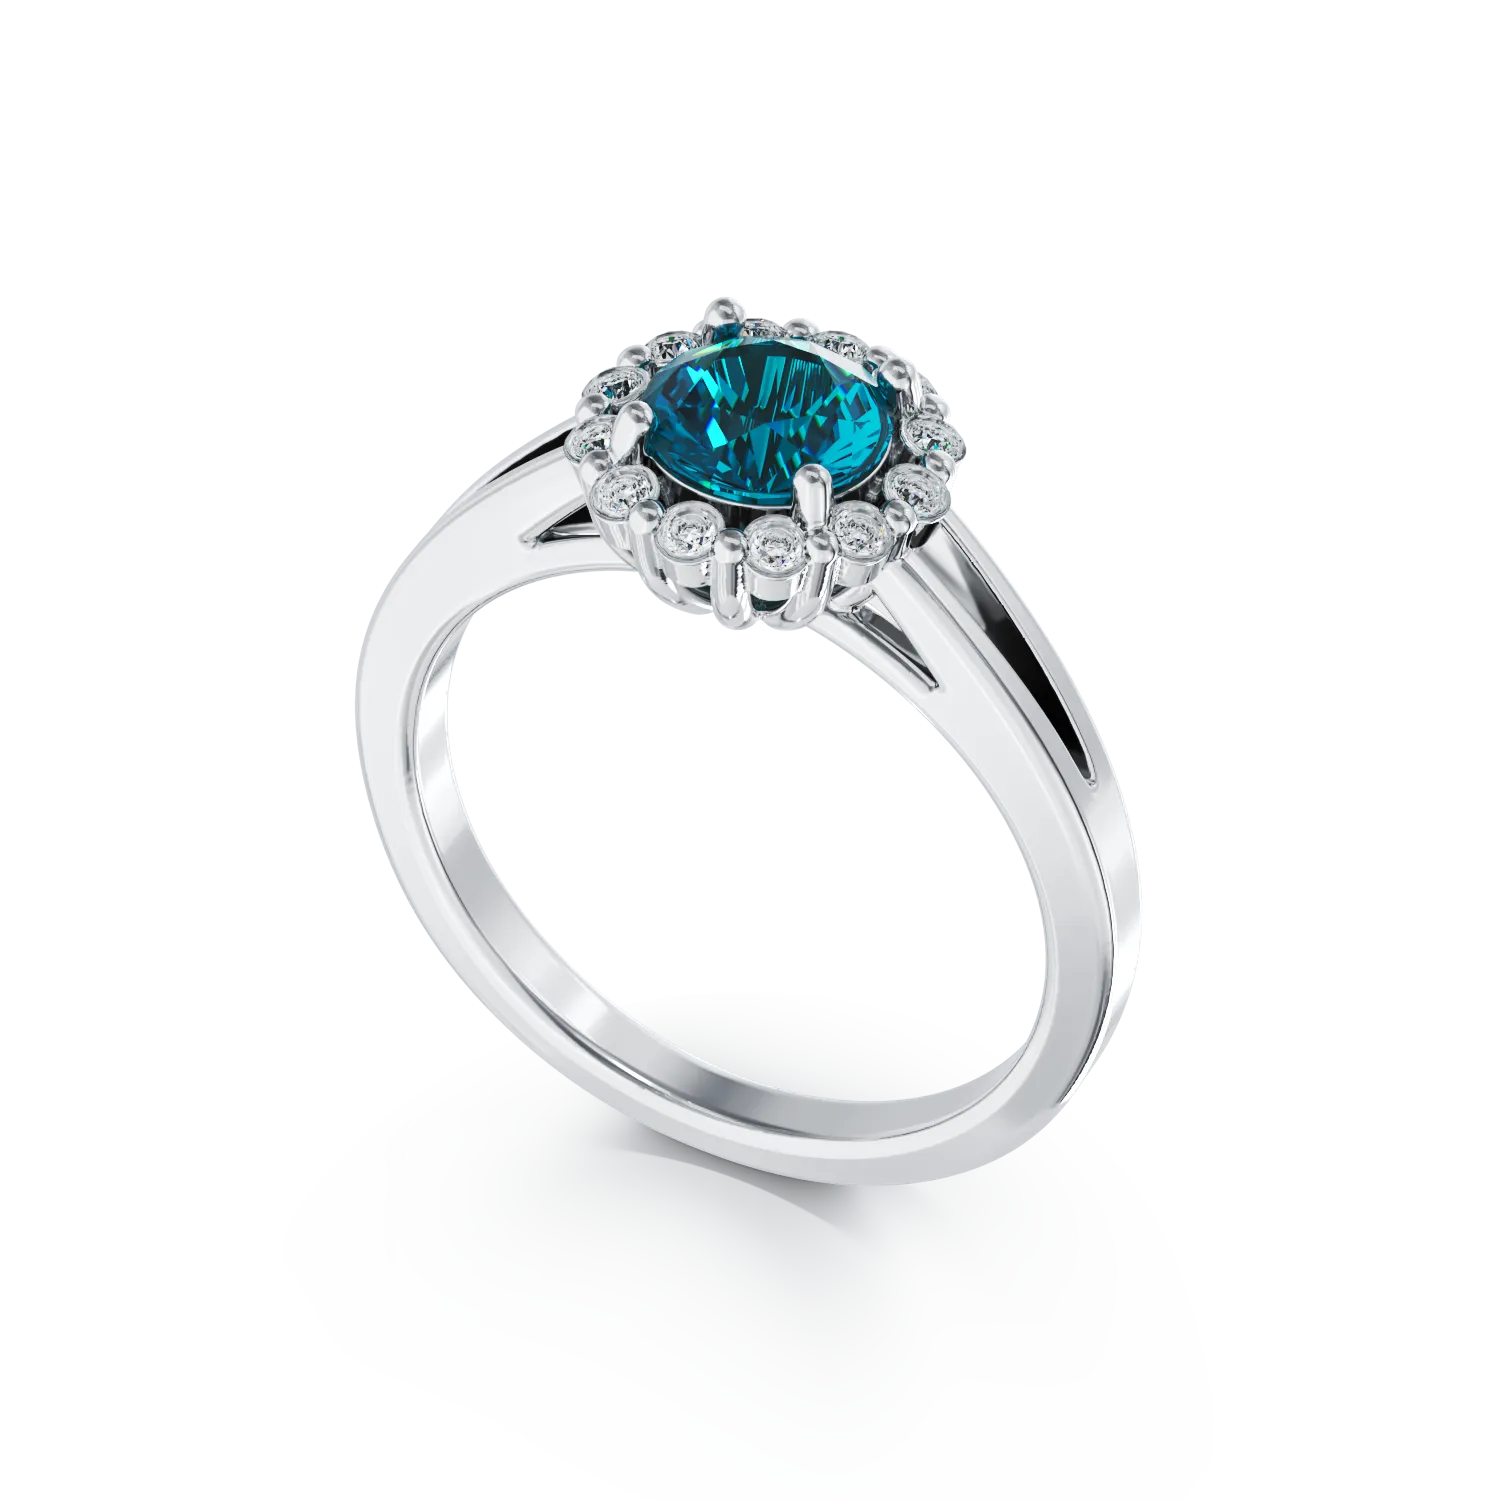 Eljegyzési gyűrű 18K-os fehér aranyból 0,44ct kék gyémánttal és 0,18ct gyémánttal